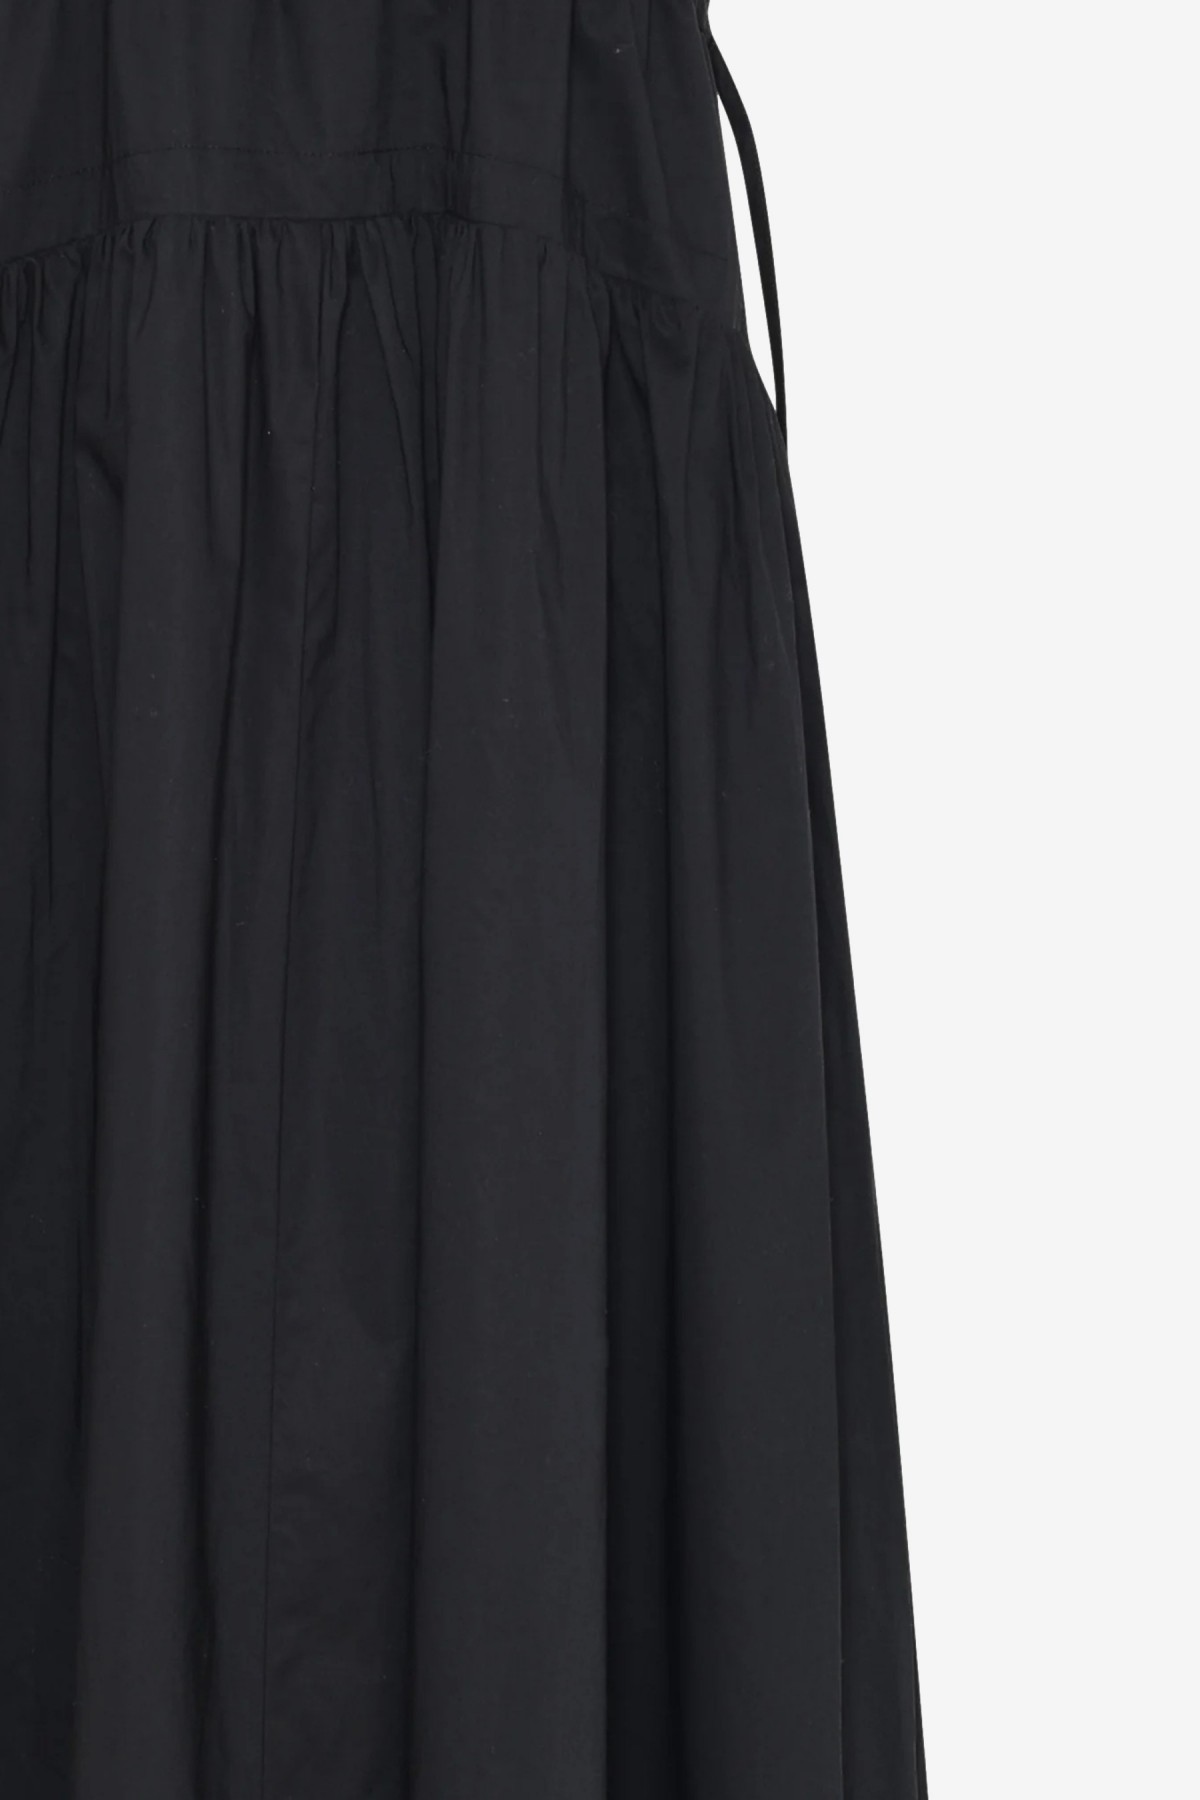 Herskind Miranda Dress in Black